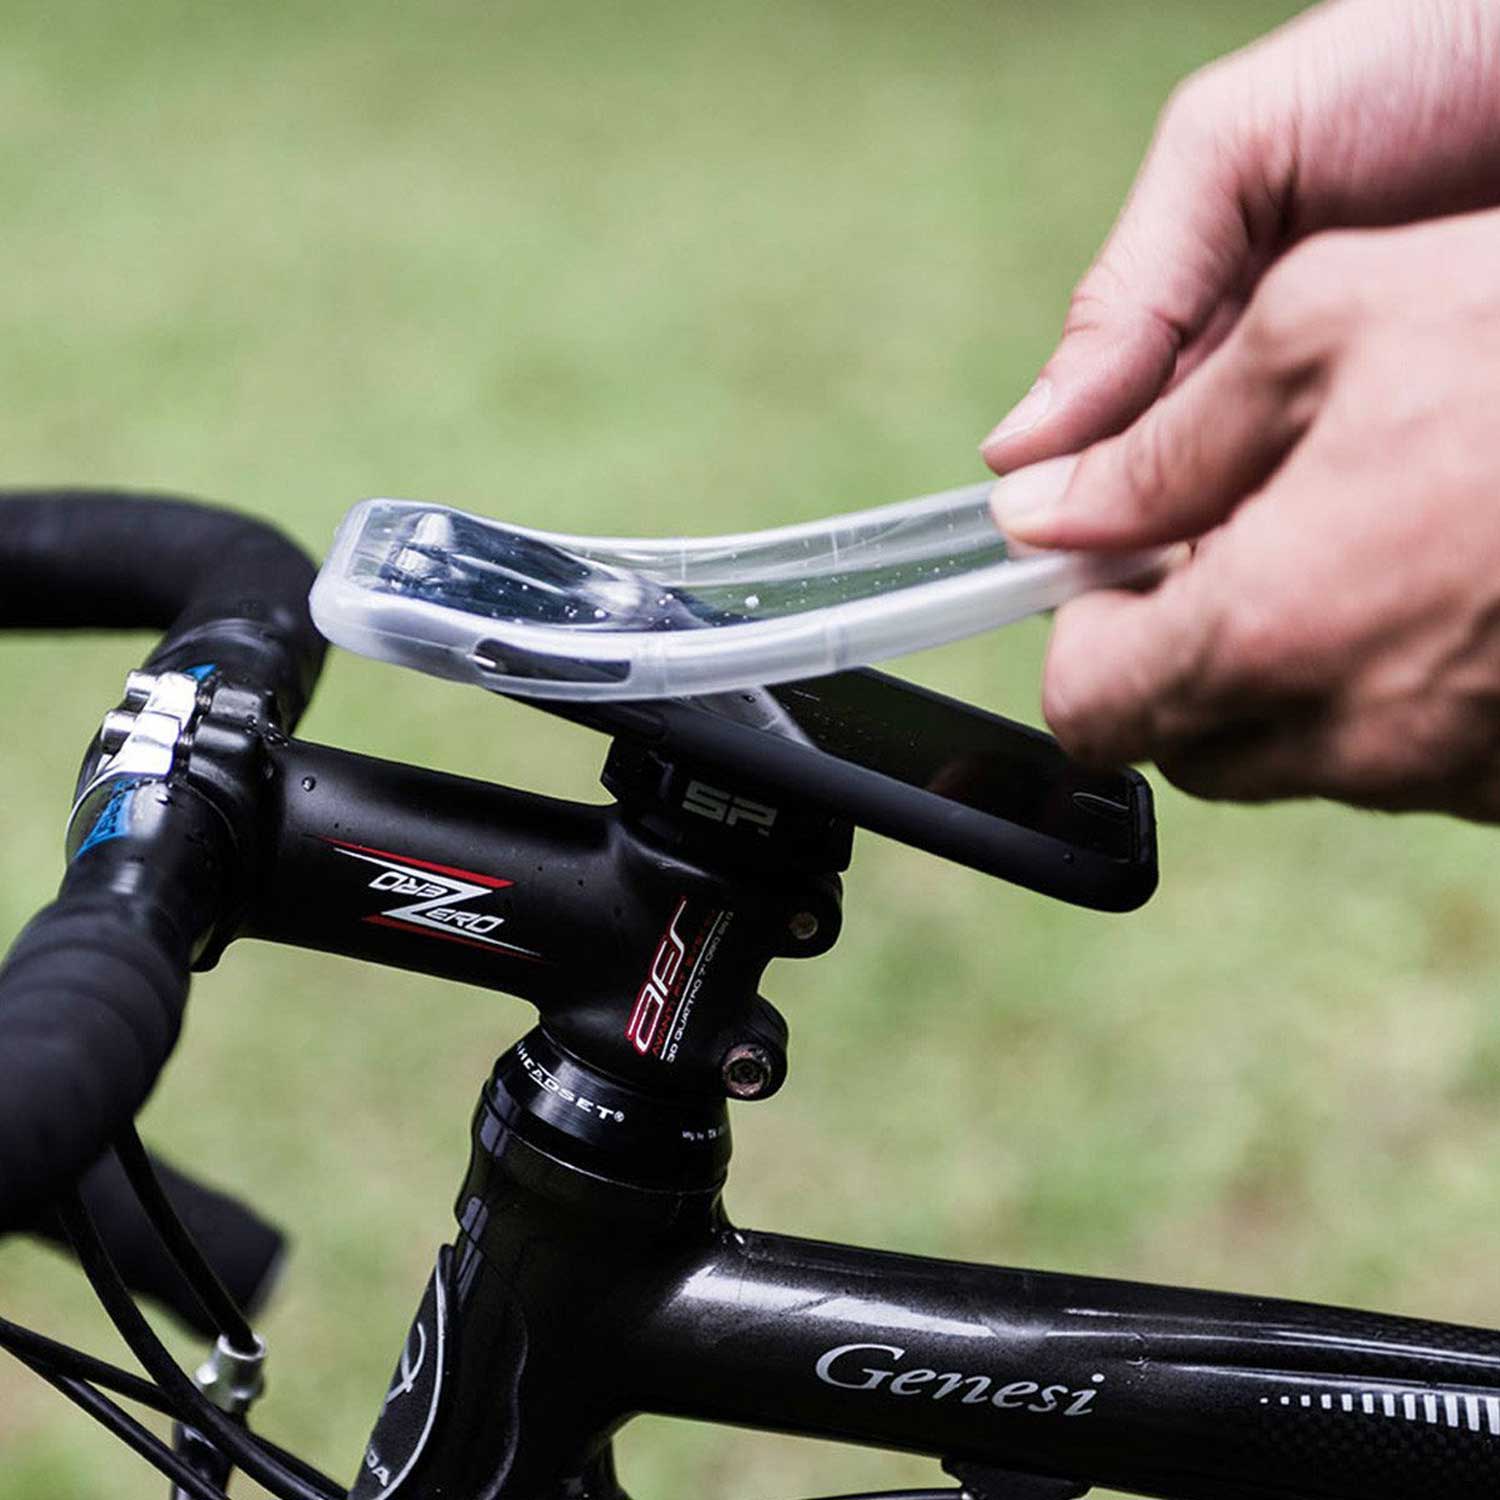 Универсален комплект за монтиране на  smartphon върху колело